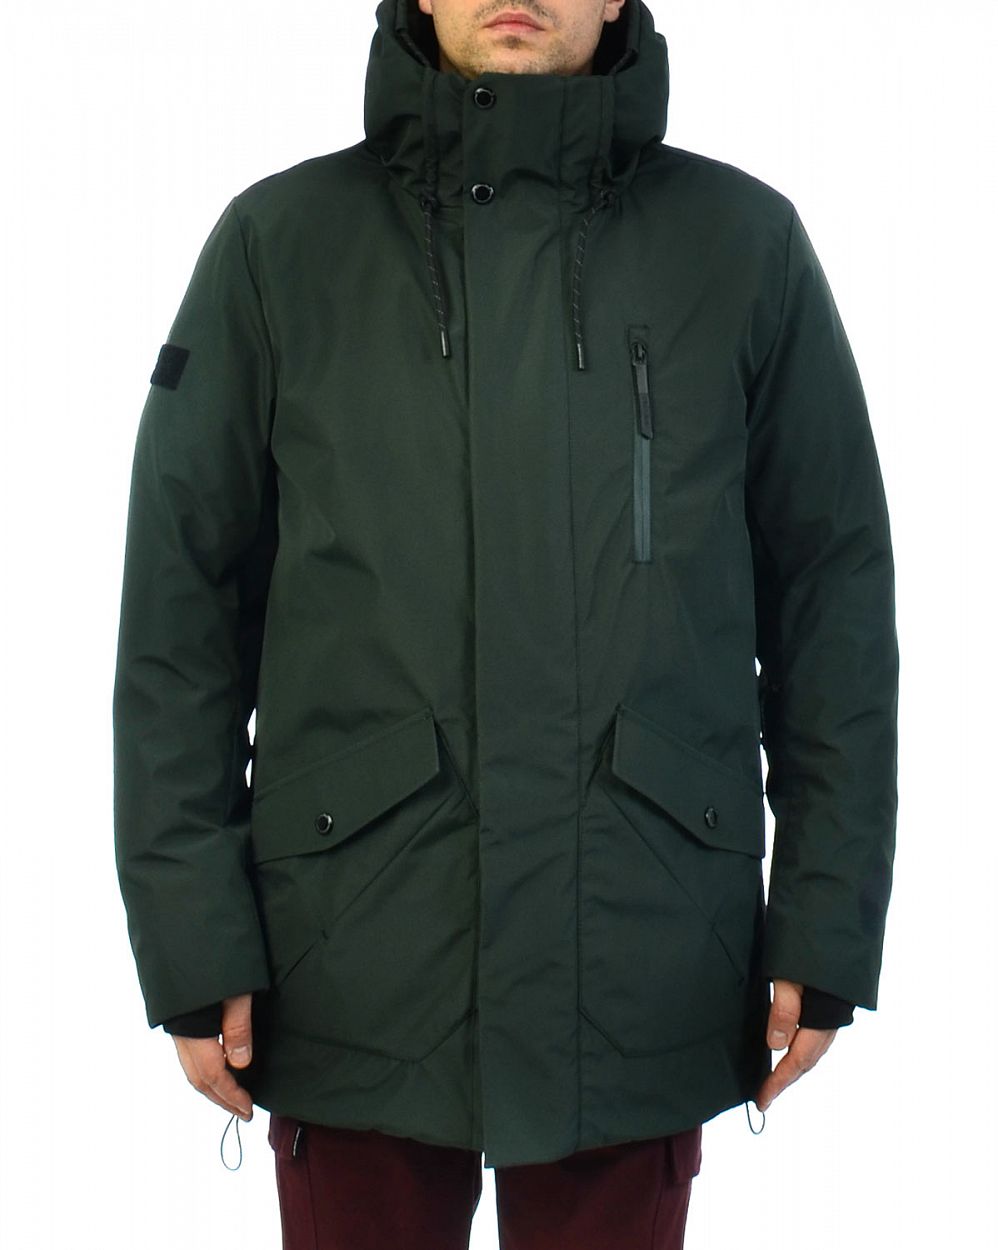 Куртка мужская зимняя водонепроницаемая на мембране Loading Reloaded 182 Green отзывы